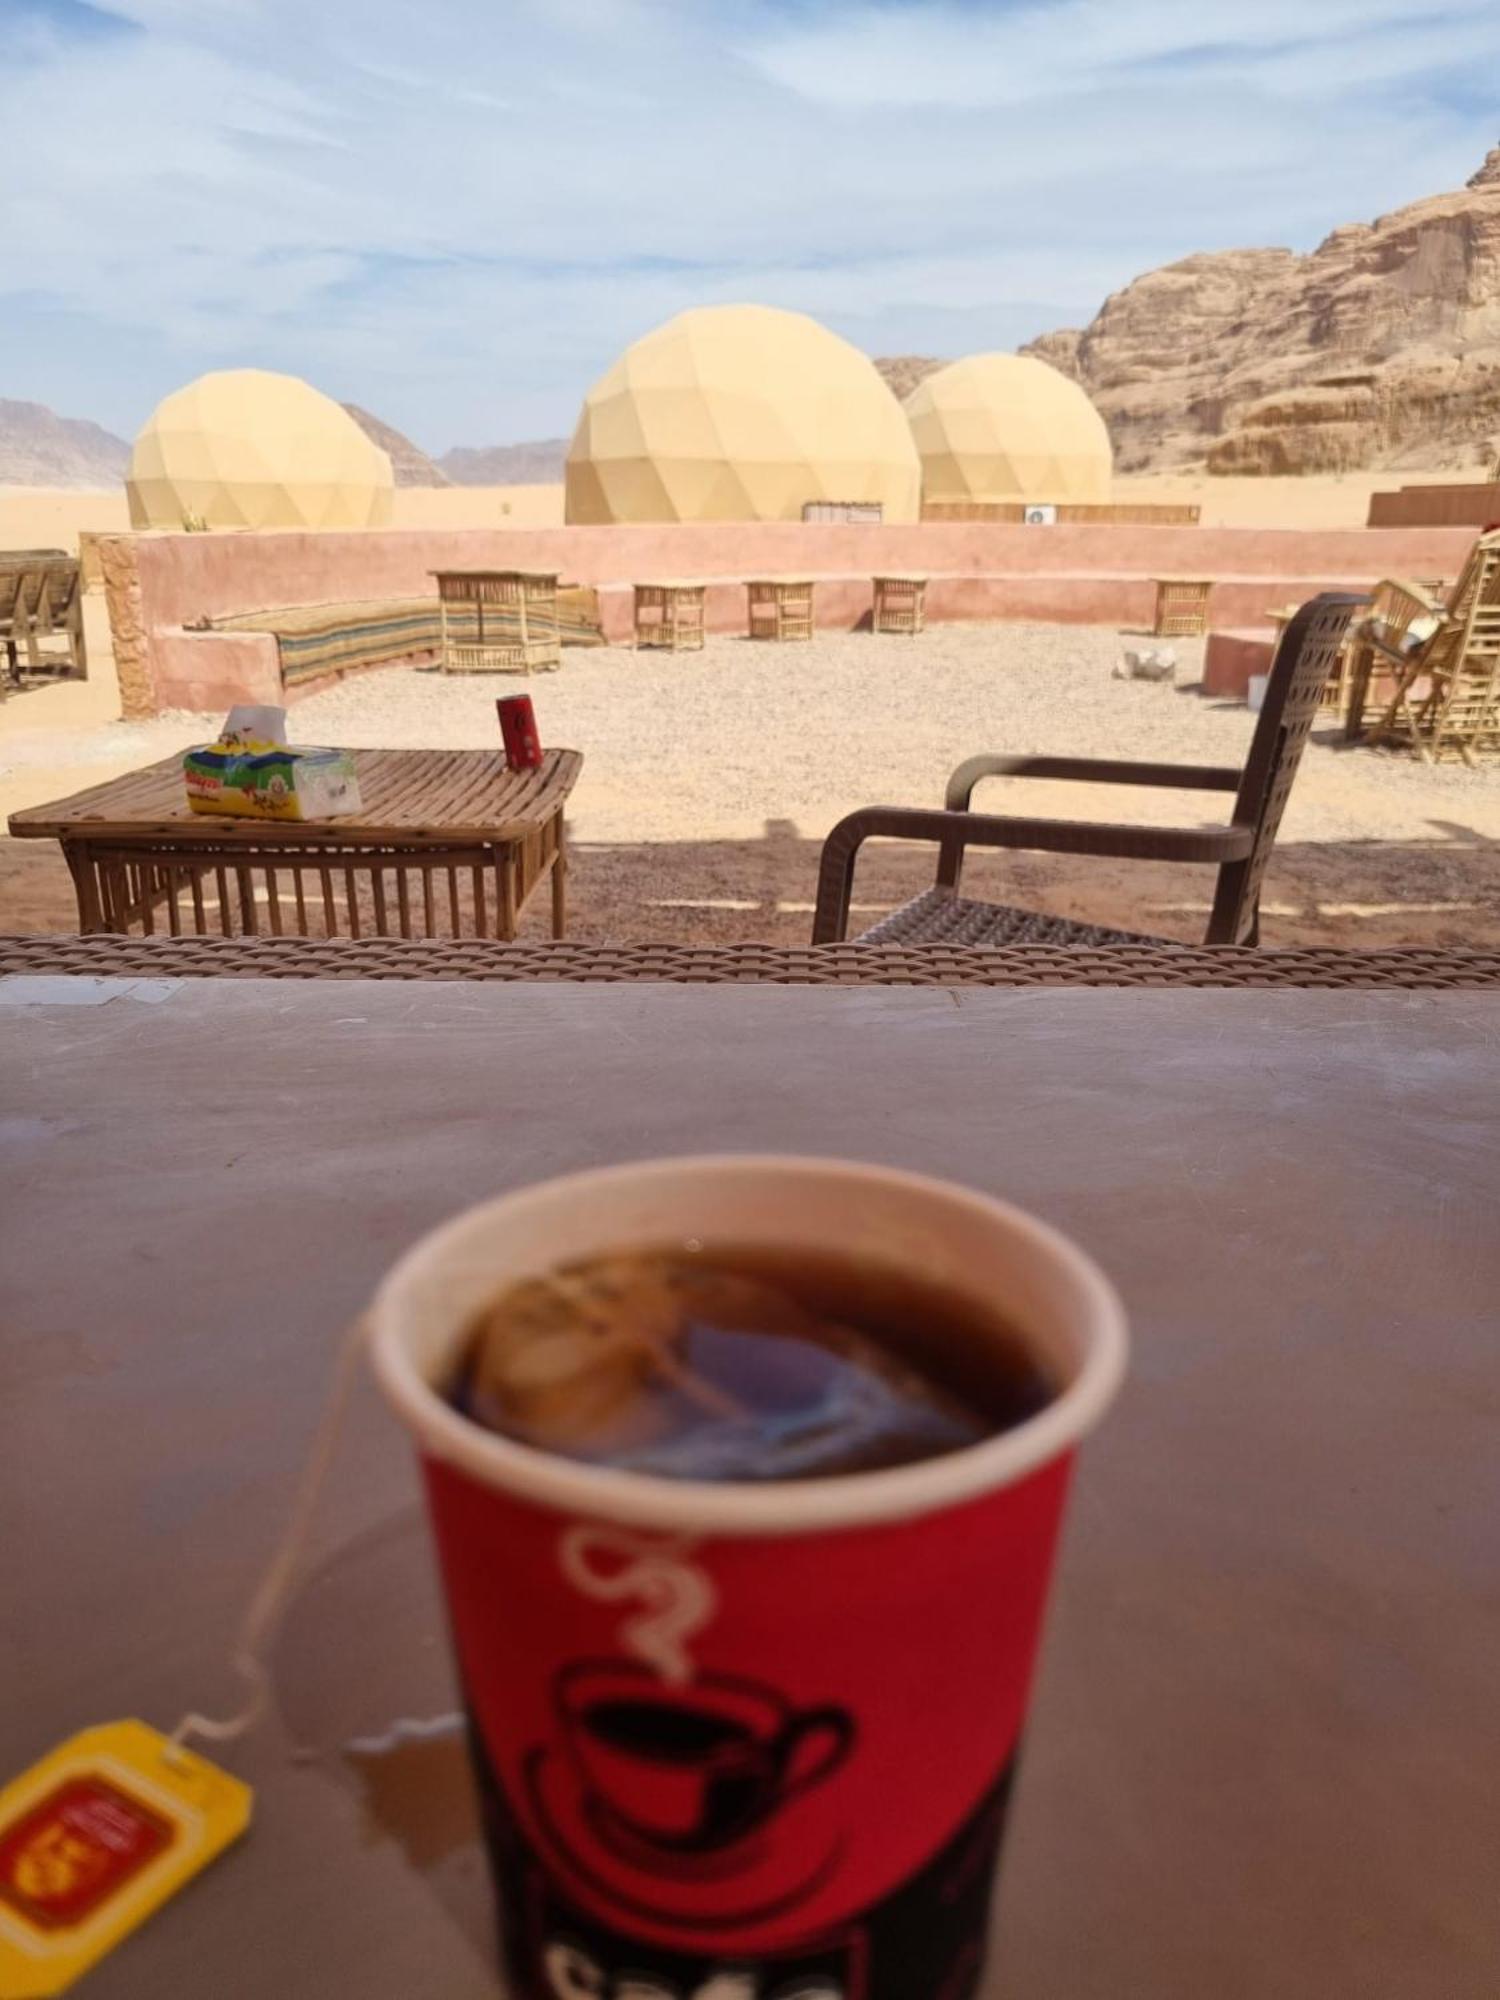 Wadi Rum Aviva Camp 外观 照片